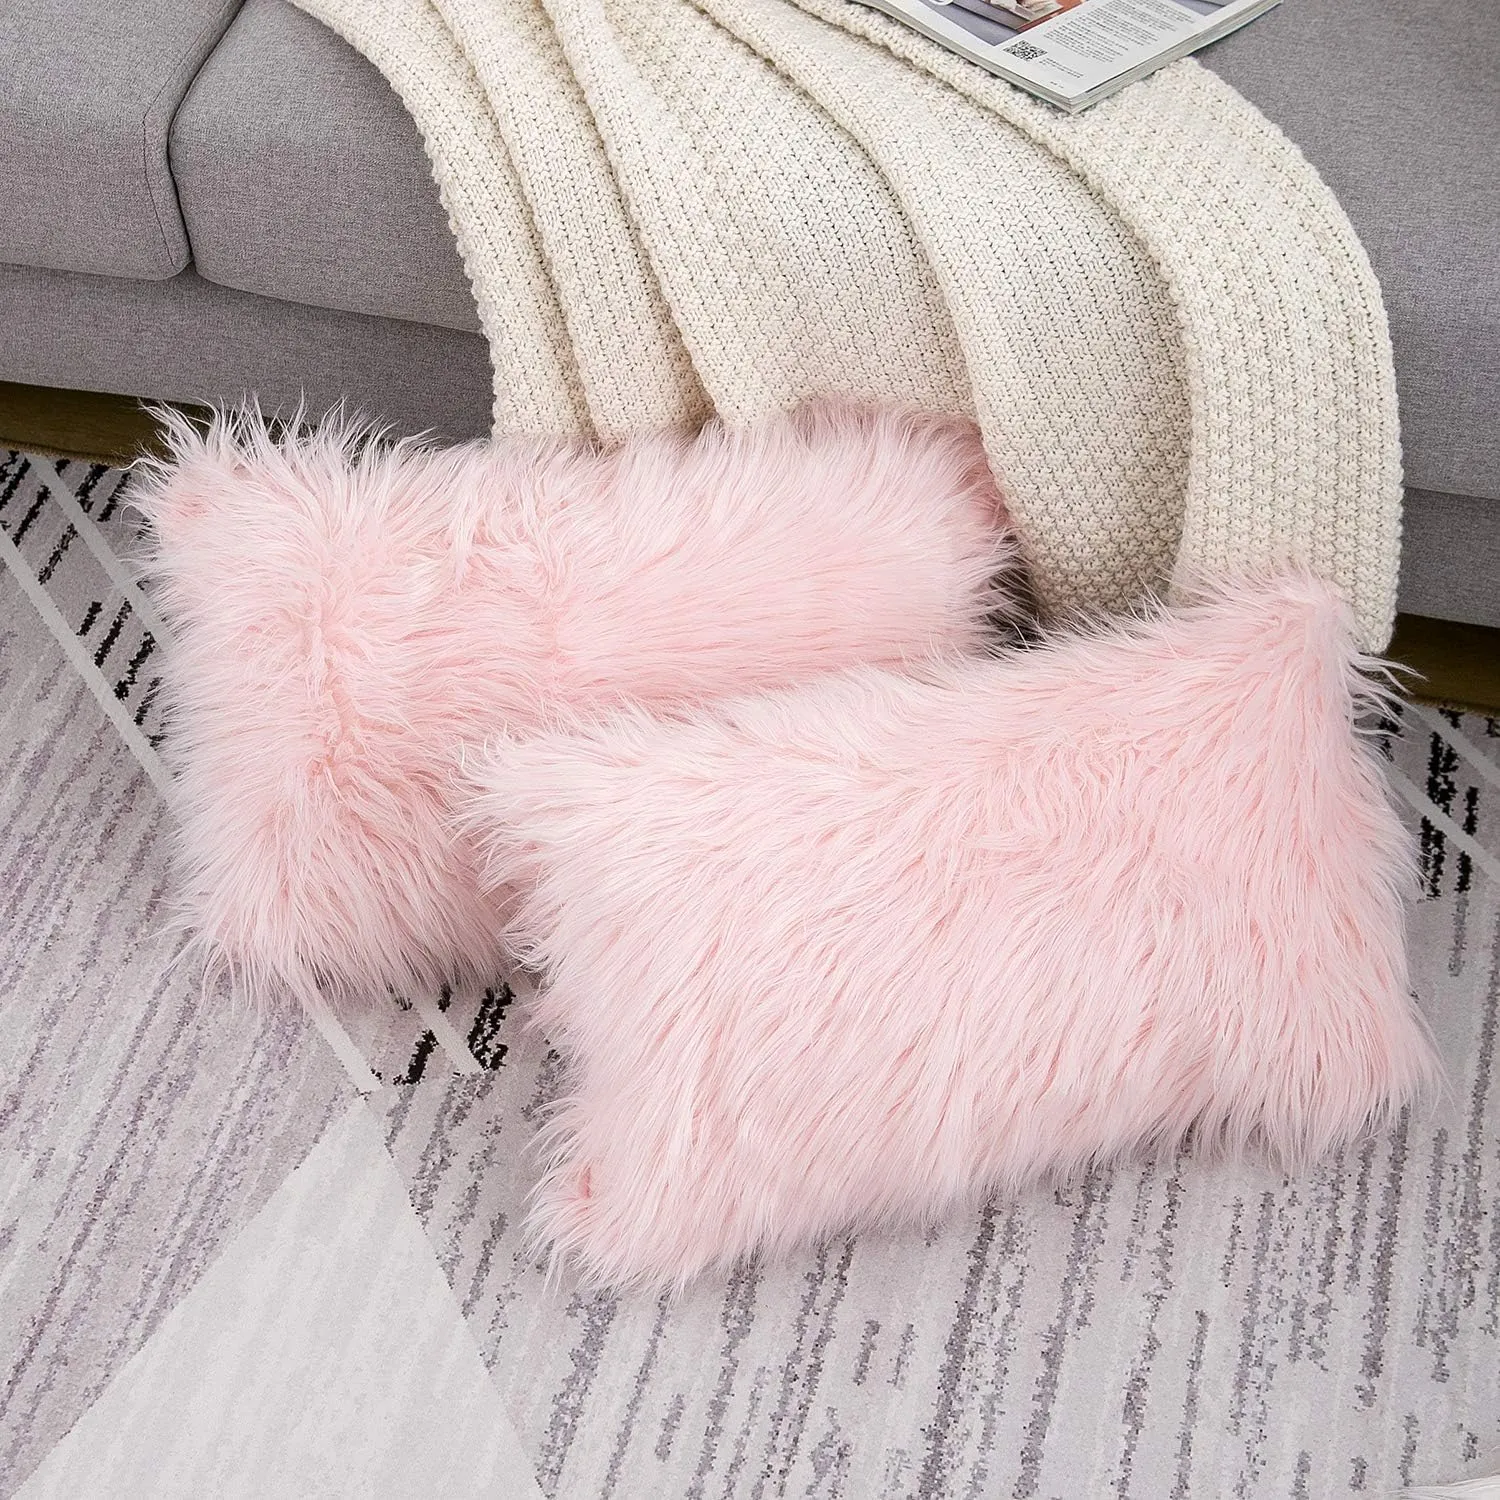 발렌타인 데이 세트 2 핑크 푹신한 베개 커버 새로운 럭셔리 시리즈 메리노 스타일의 가짜 모피 장식 베개 커버 커버 스퀘어